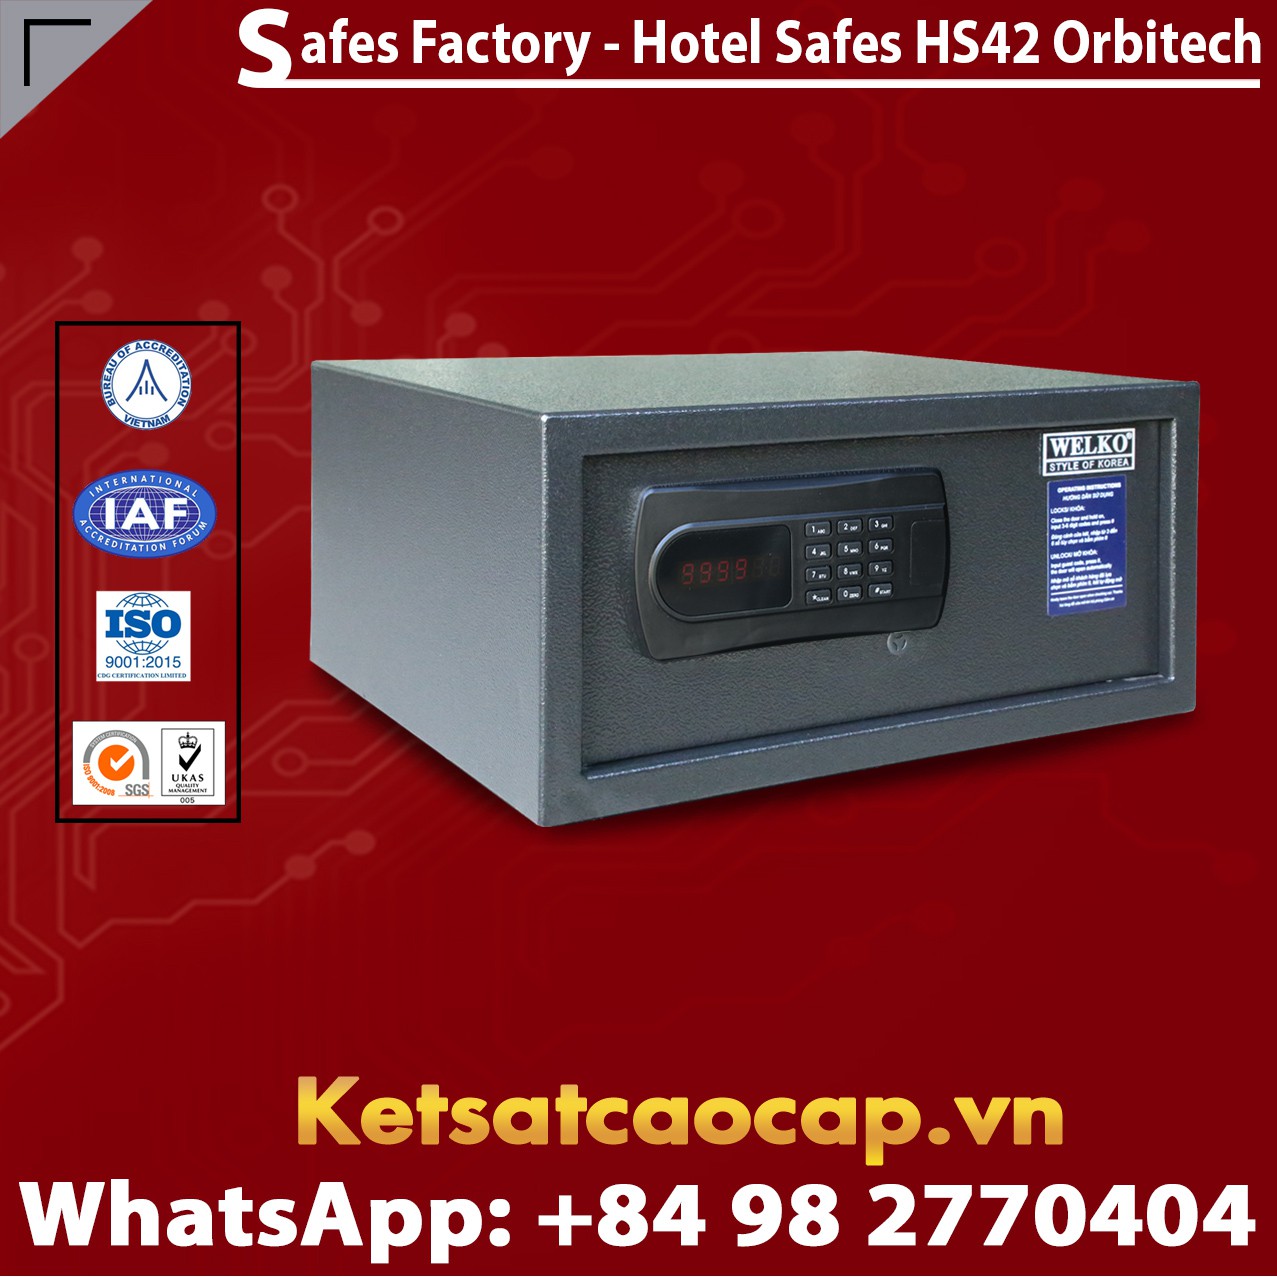 Hotel Safety Deposit Box WELKO HS42 Orbitech